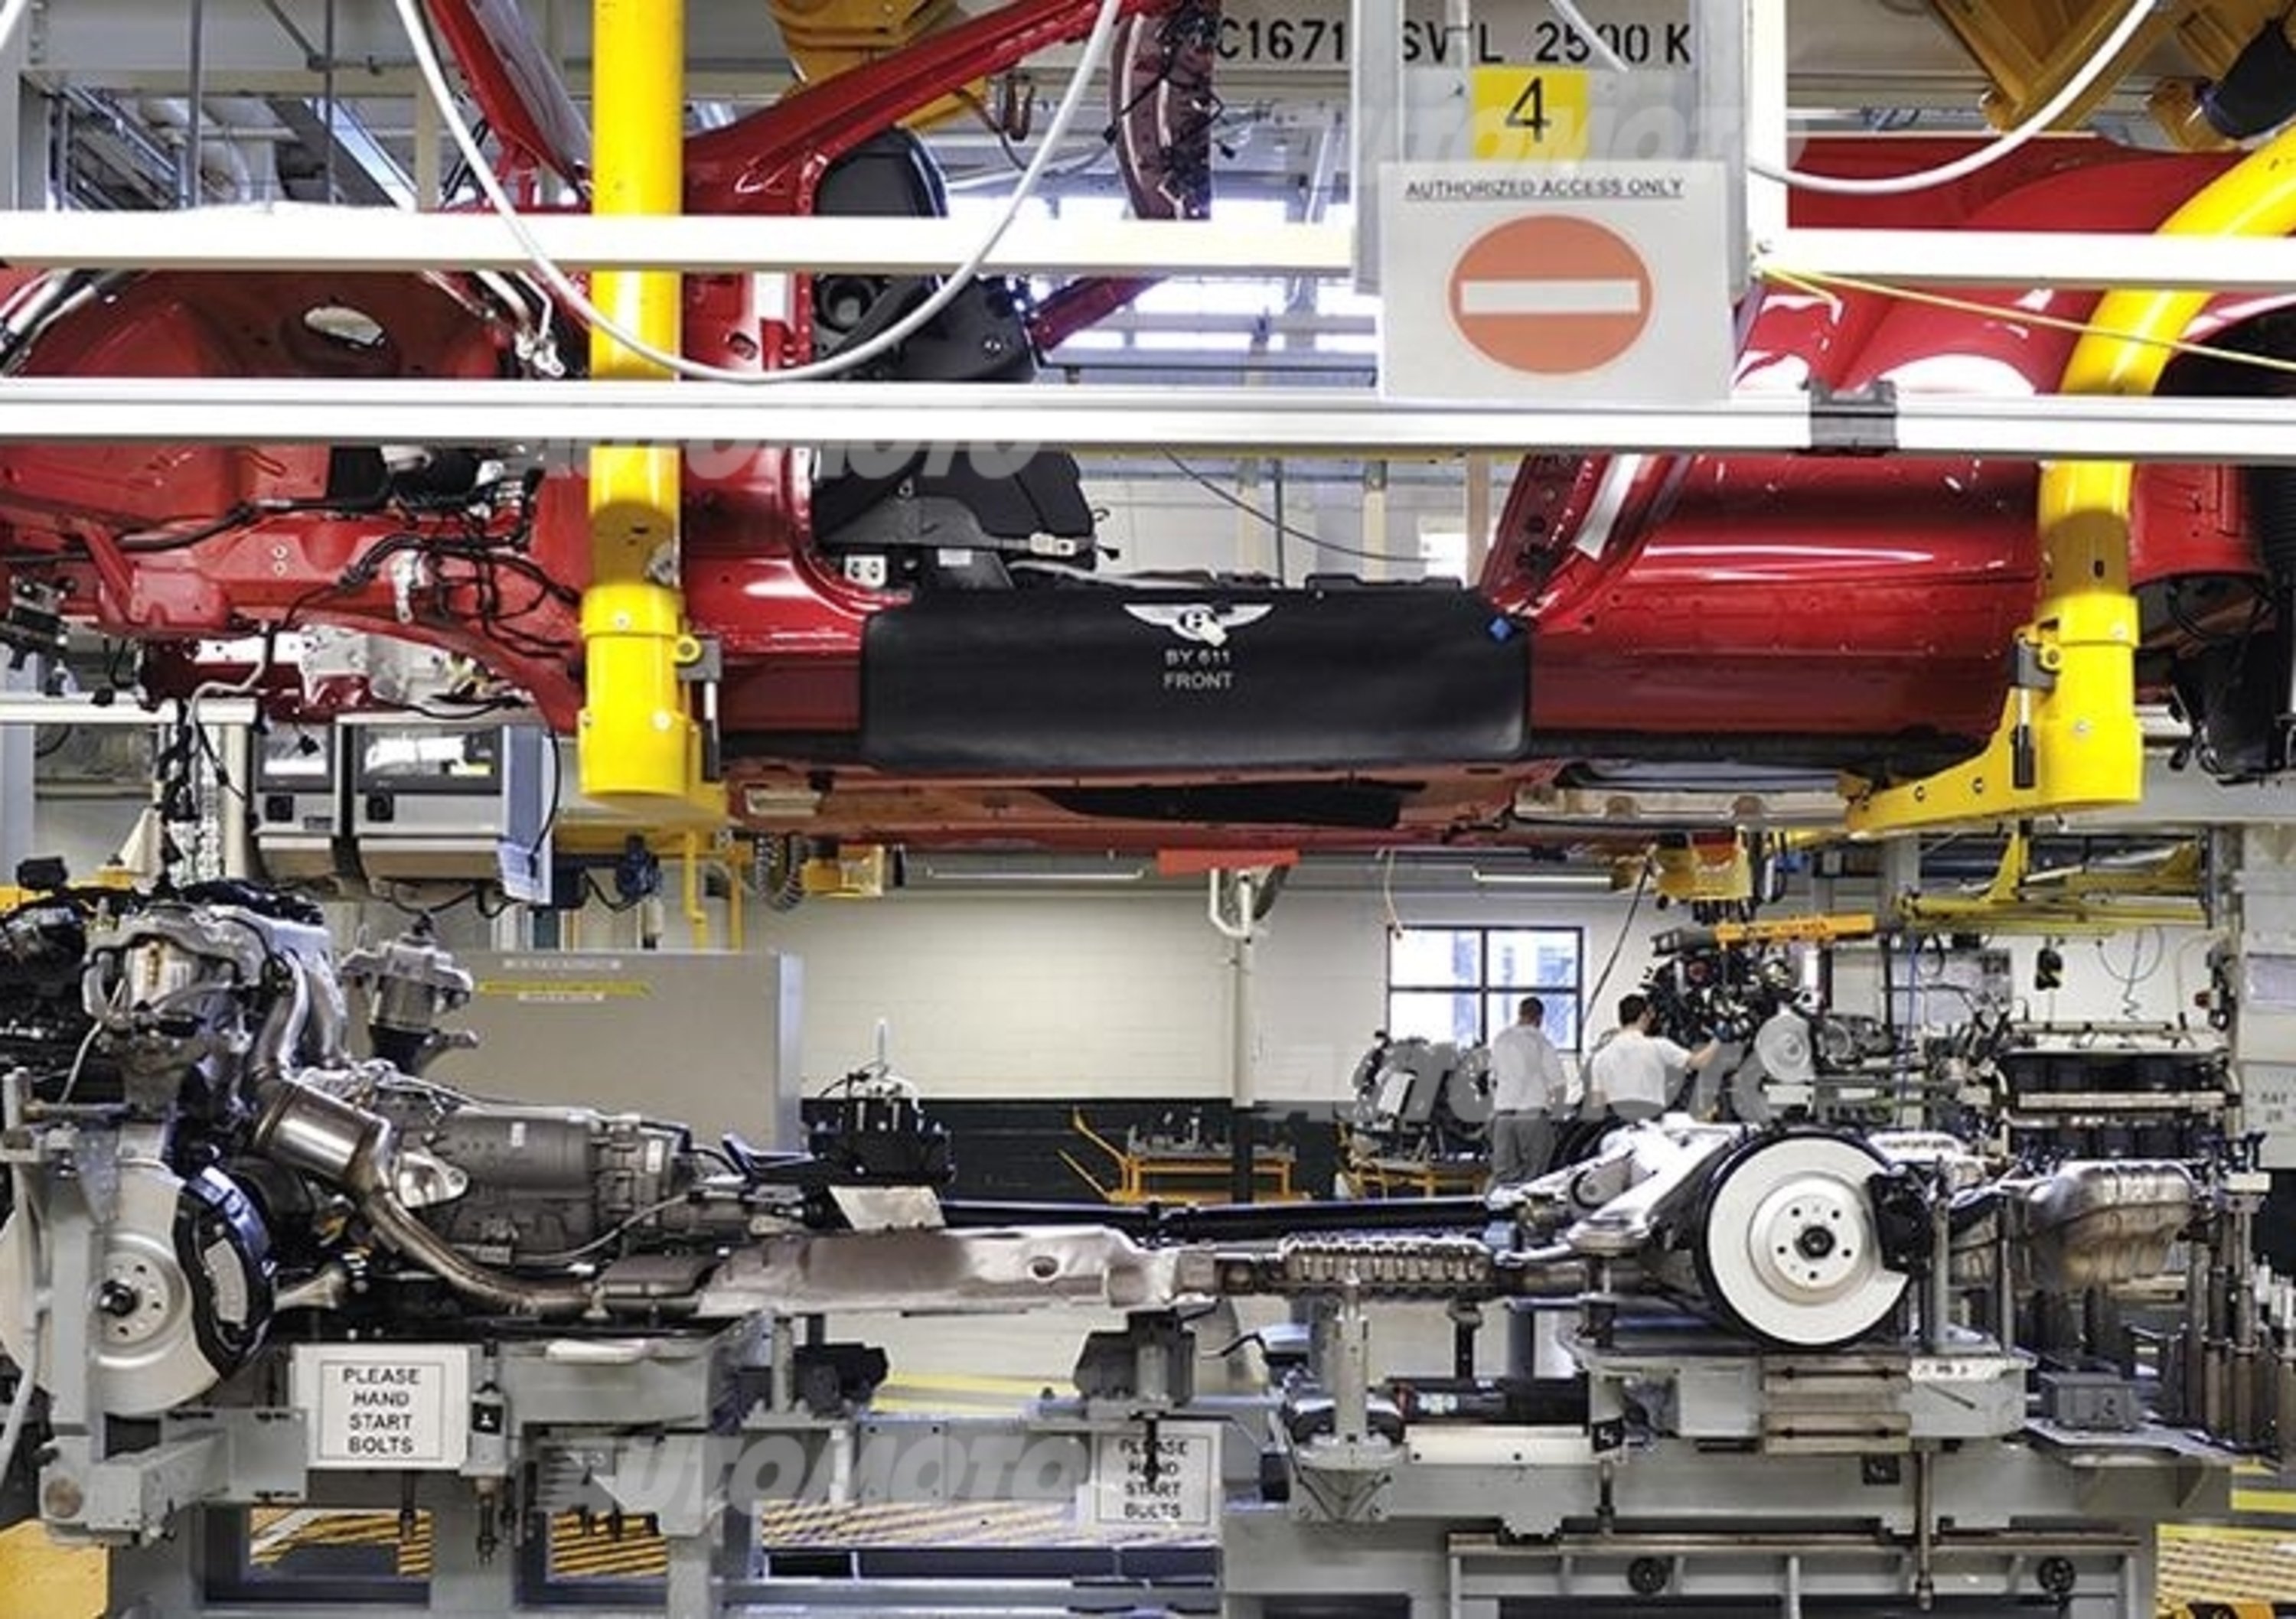 Bentley Factory Experience: dove nascono le auto di Queen Elizabeth